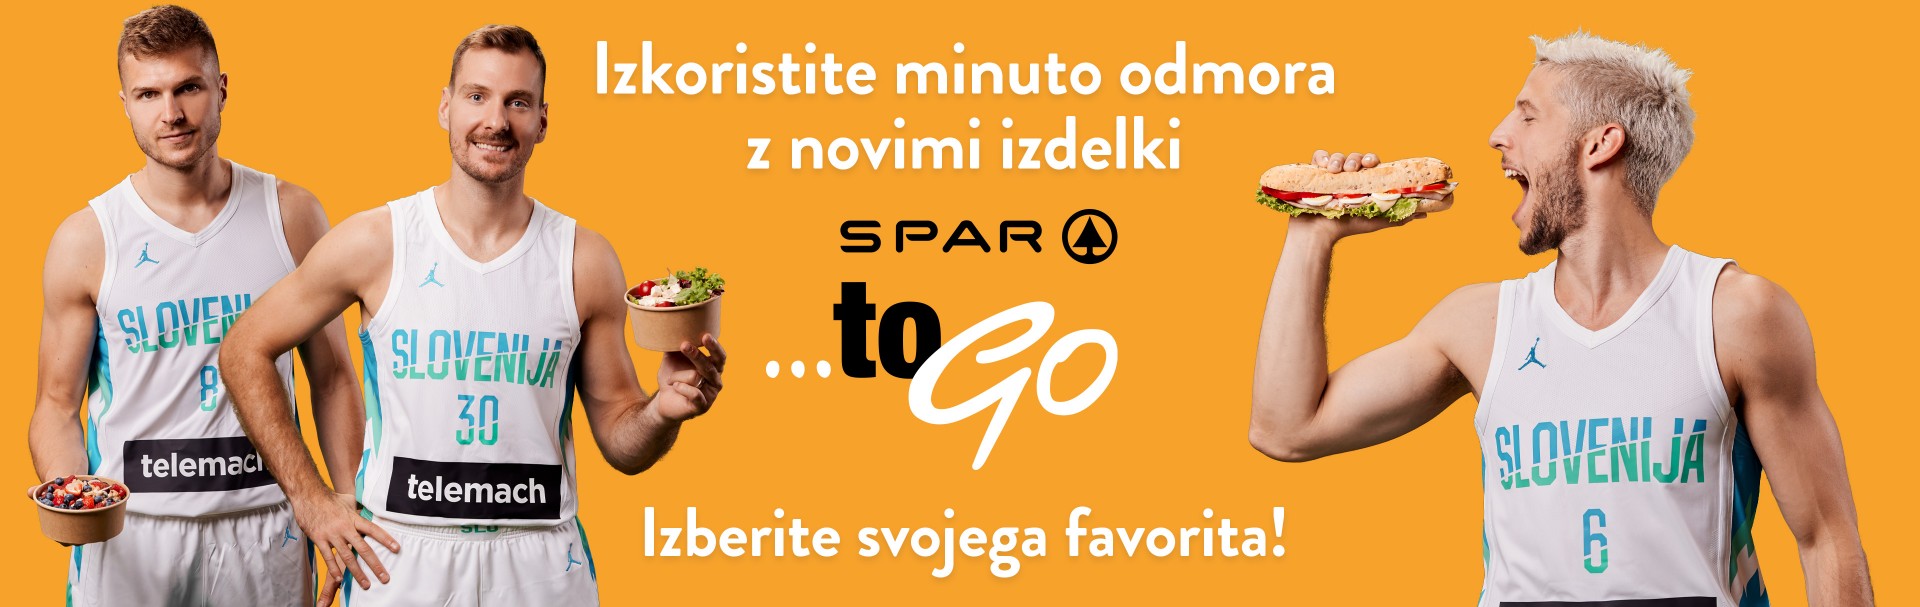 Izkoristite minuto odmora z novimi izdelki SPAR TO GO! Sparova peterka izdelkov SPAR TO GO